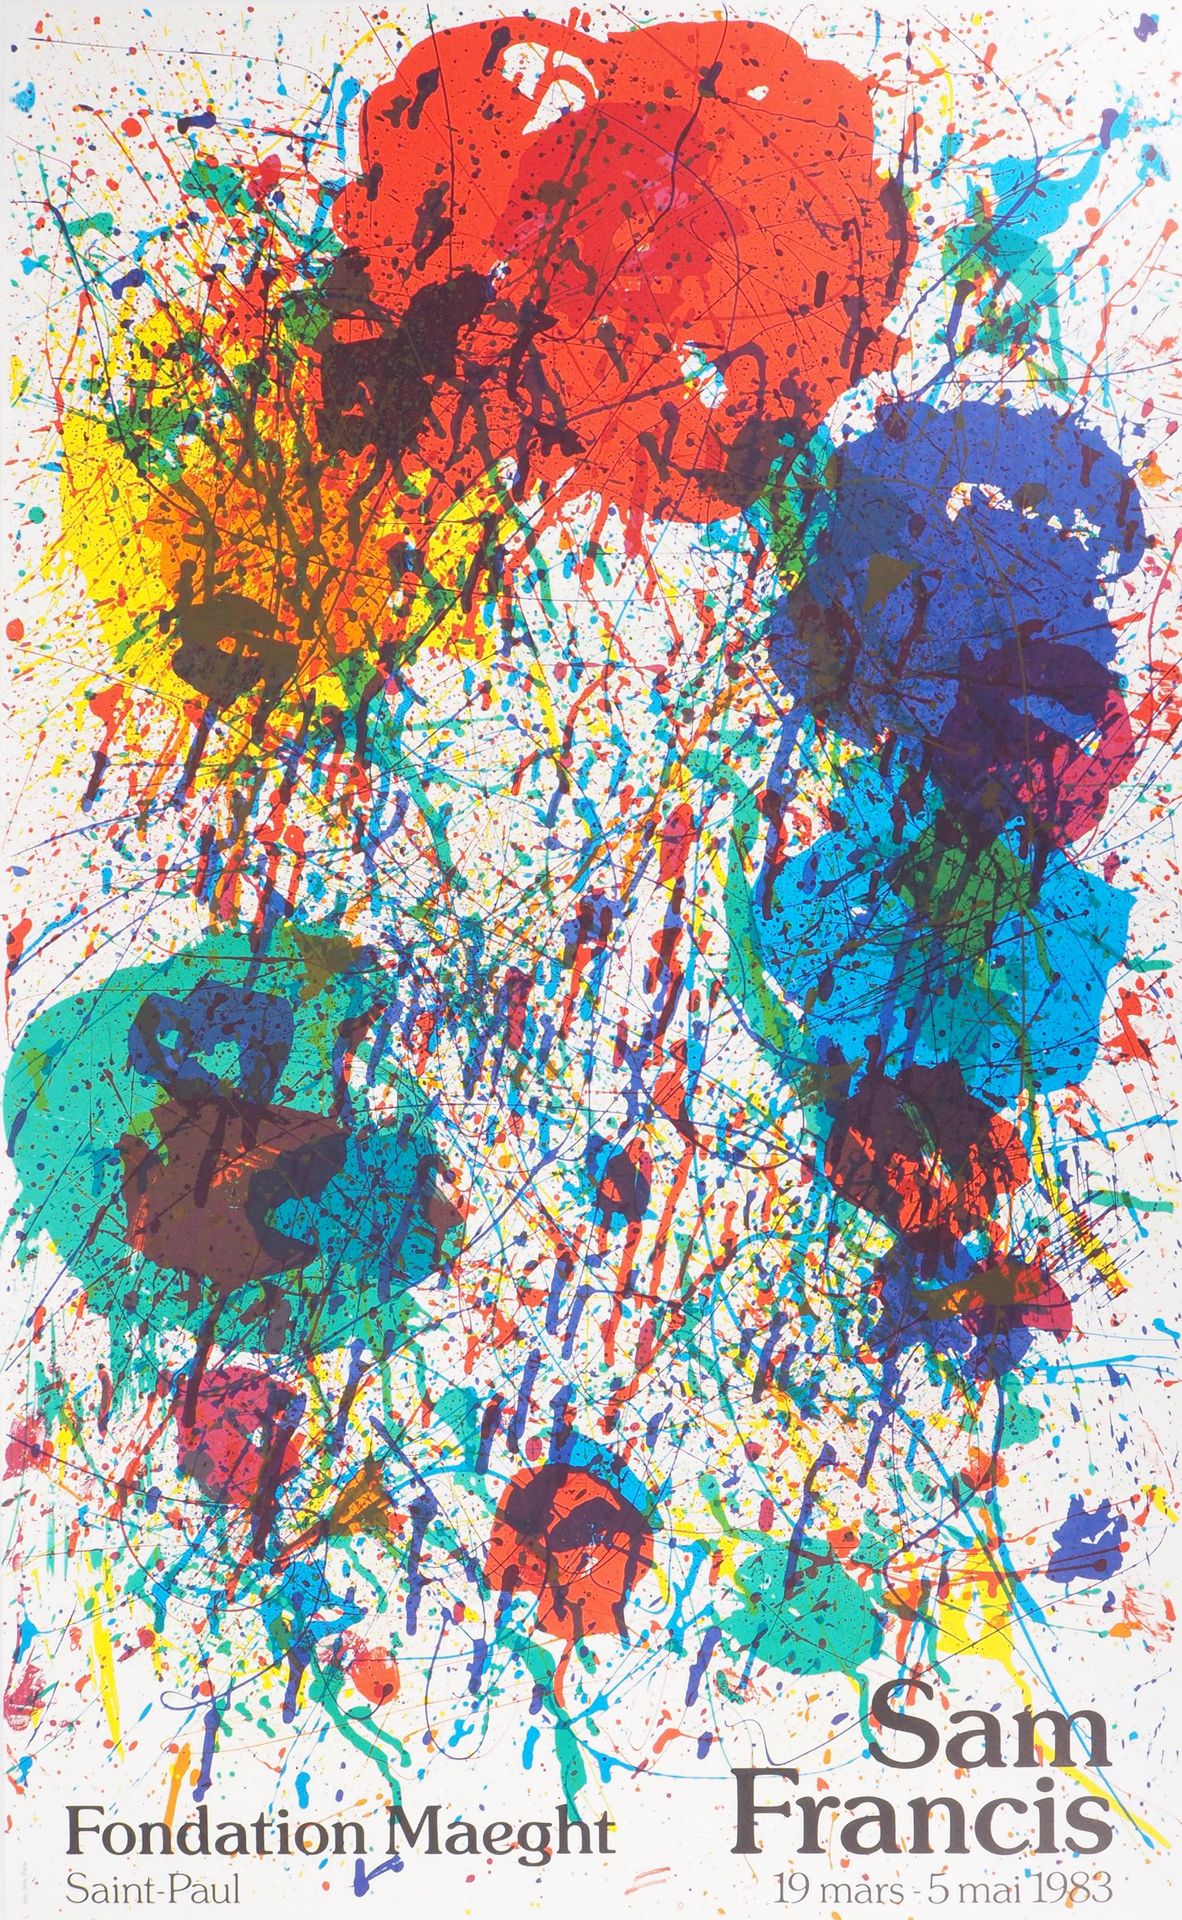 Sam FRANCIS Sam FRANCIS

Explosión de colores

Cartel litográfico original de la&hellip;